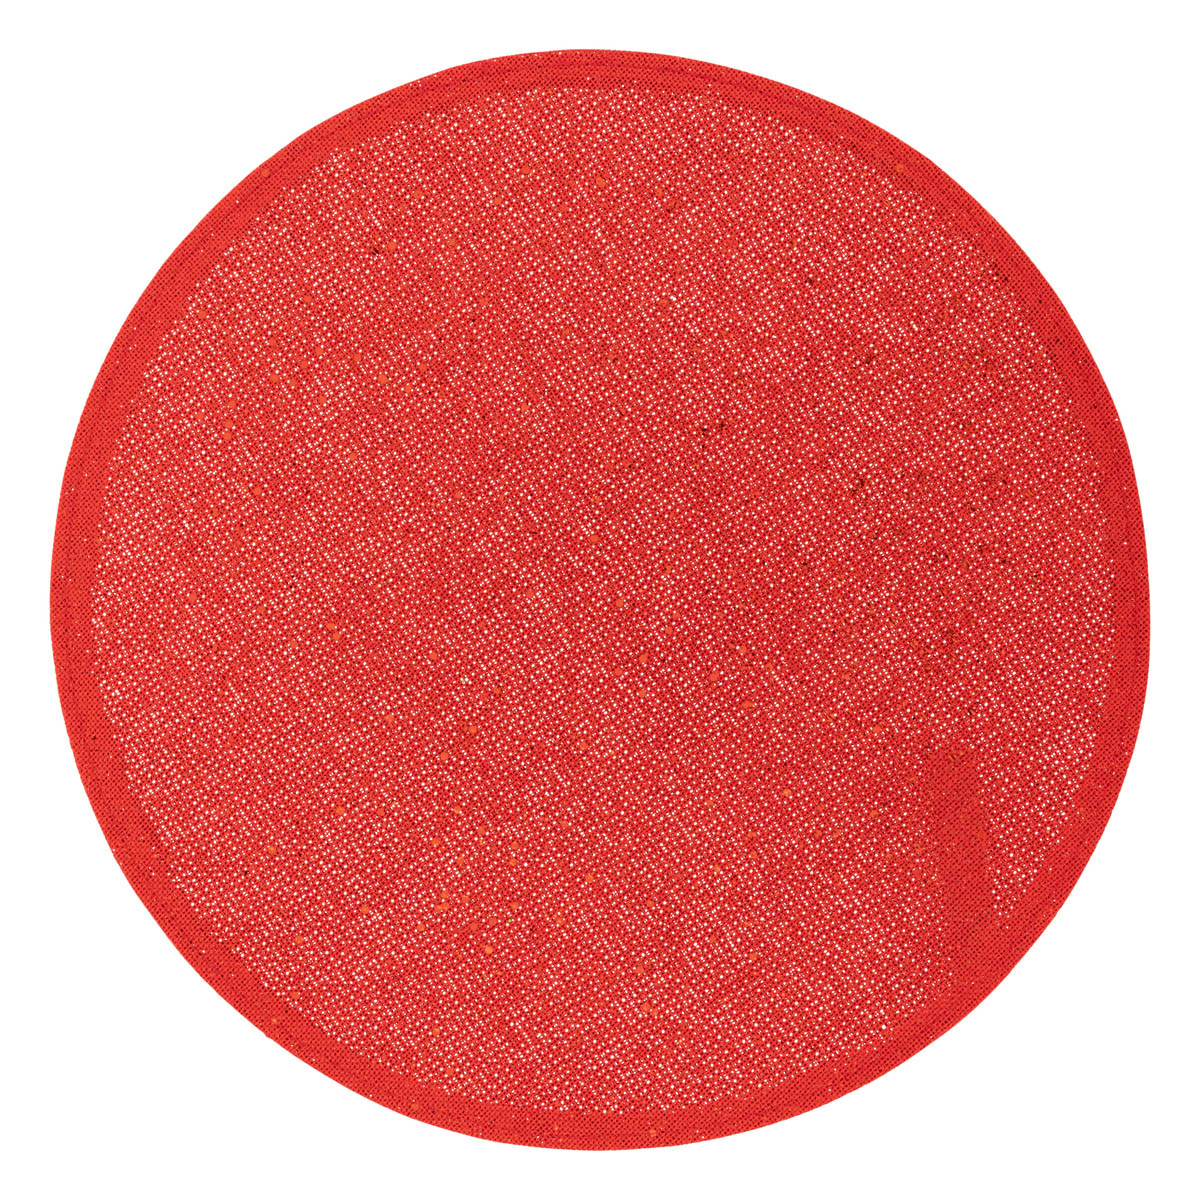 Σουπλά (Φ38) A-S Glitter Red 191118RG 266345